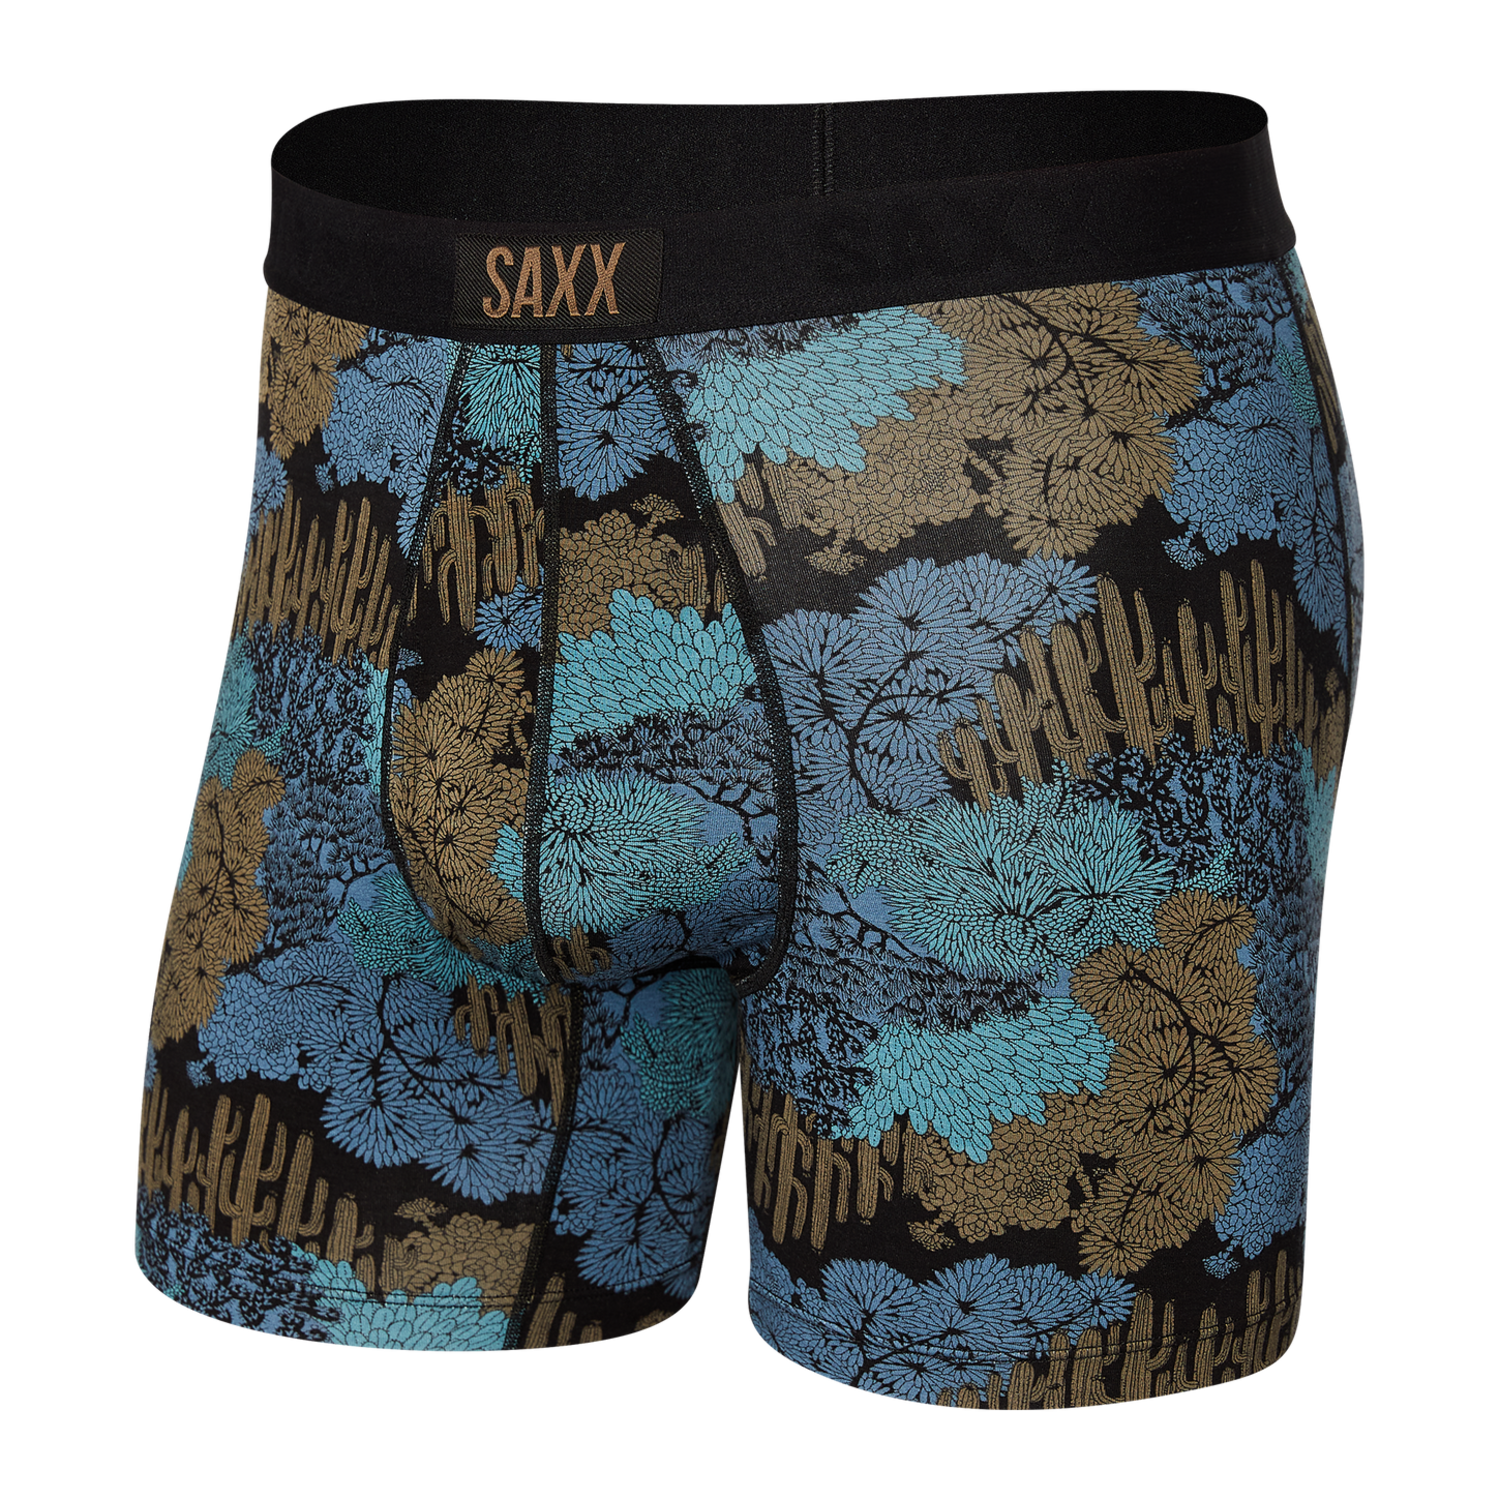 Saxx Men's Underwear– Ultra Super Soft Briefs for Men with Built